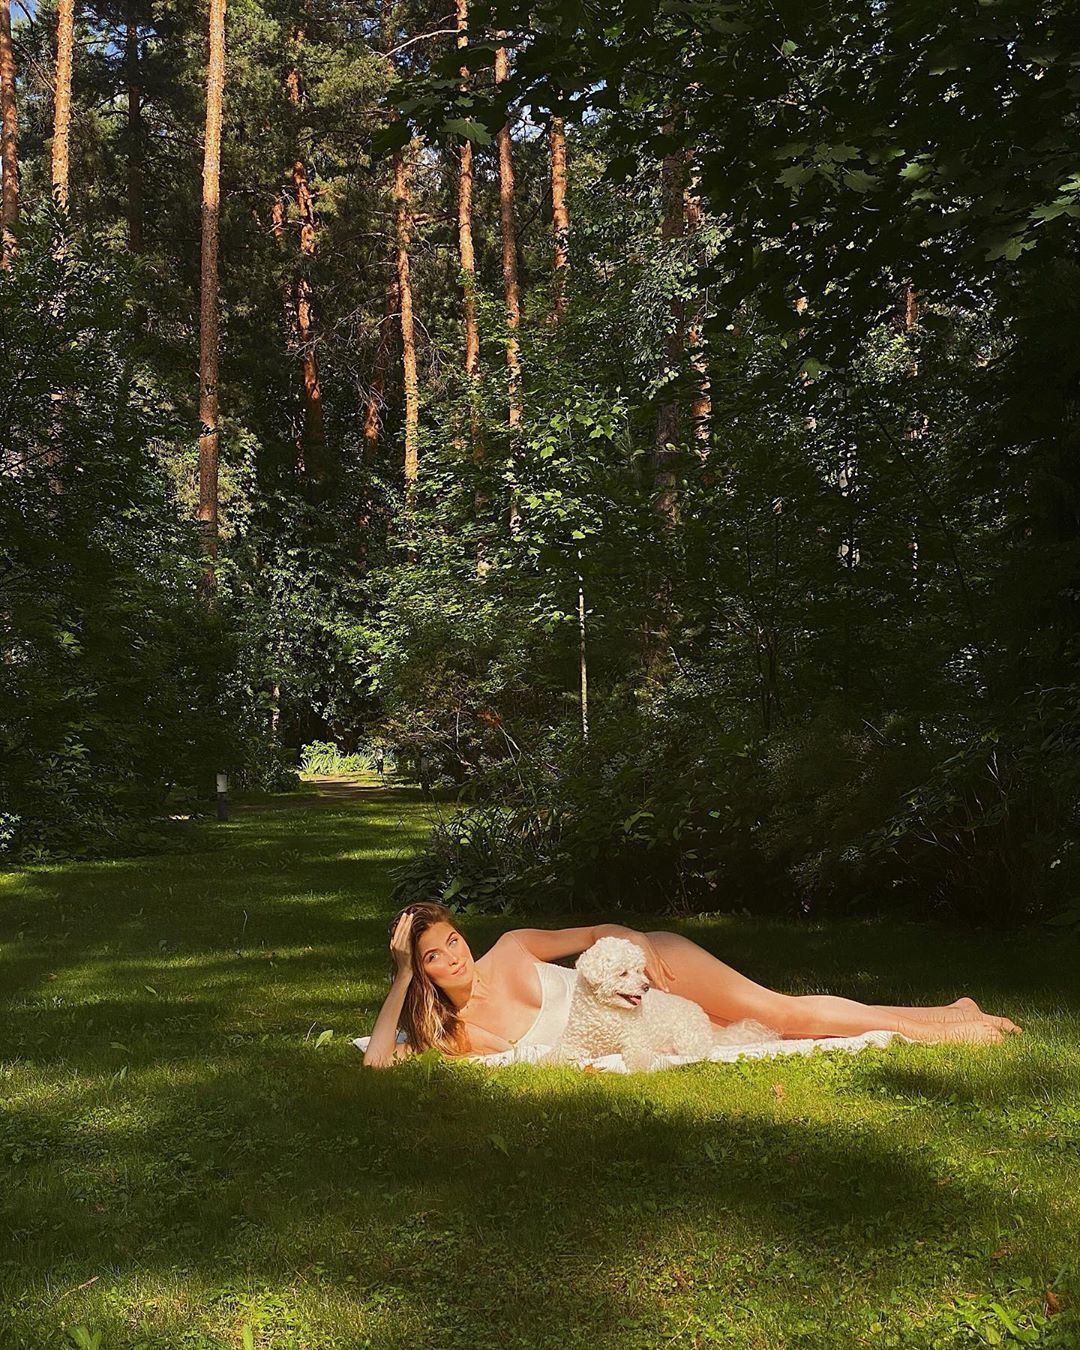 Соня Евдокименко в откровенном купальнике (Instagram Сони Евдокименко)